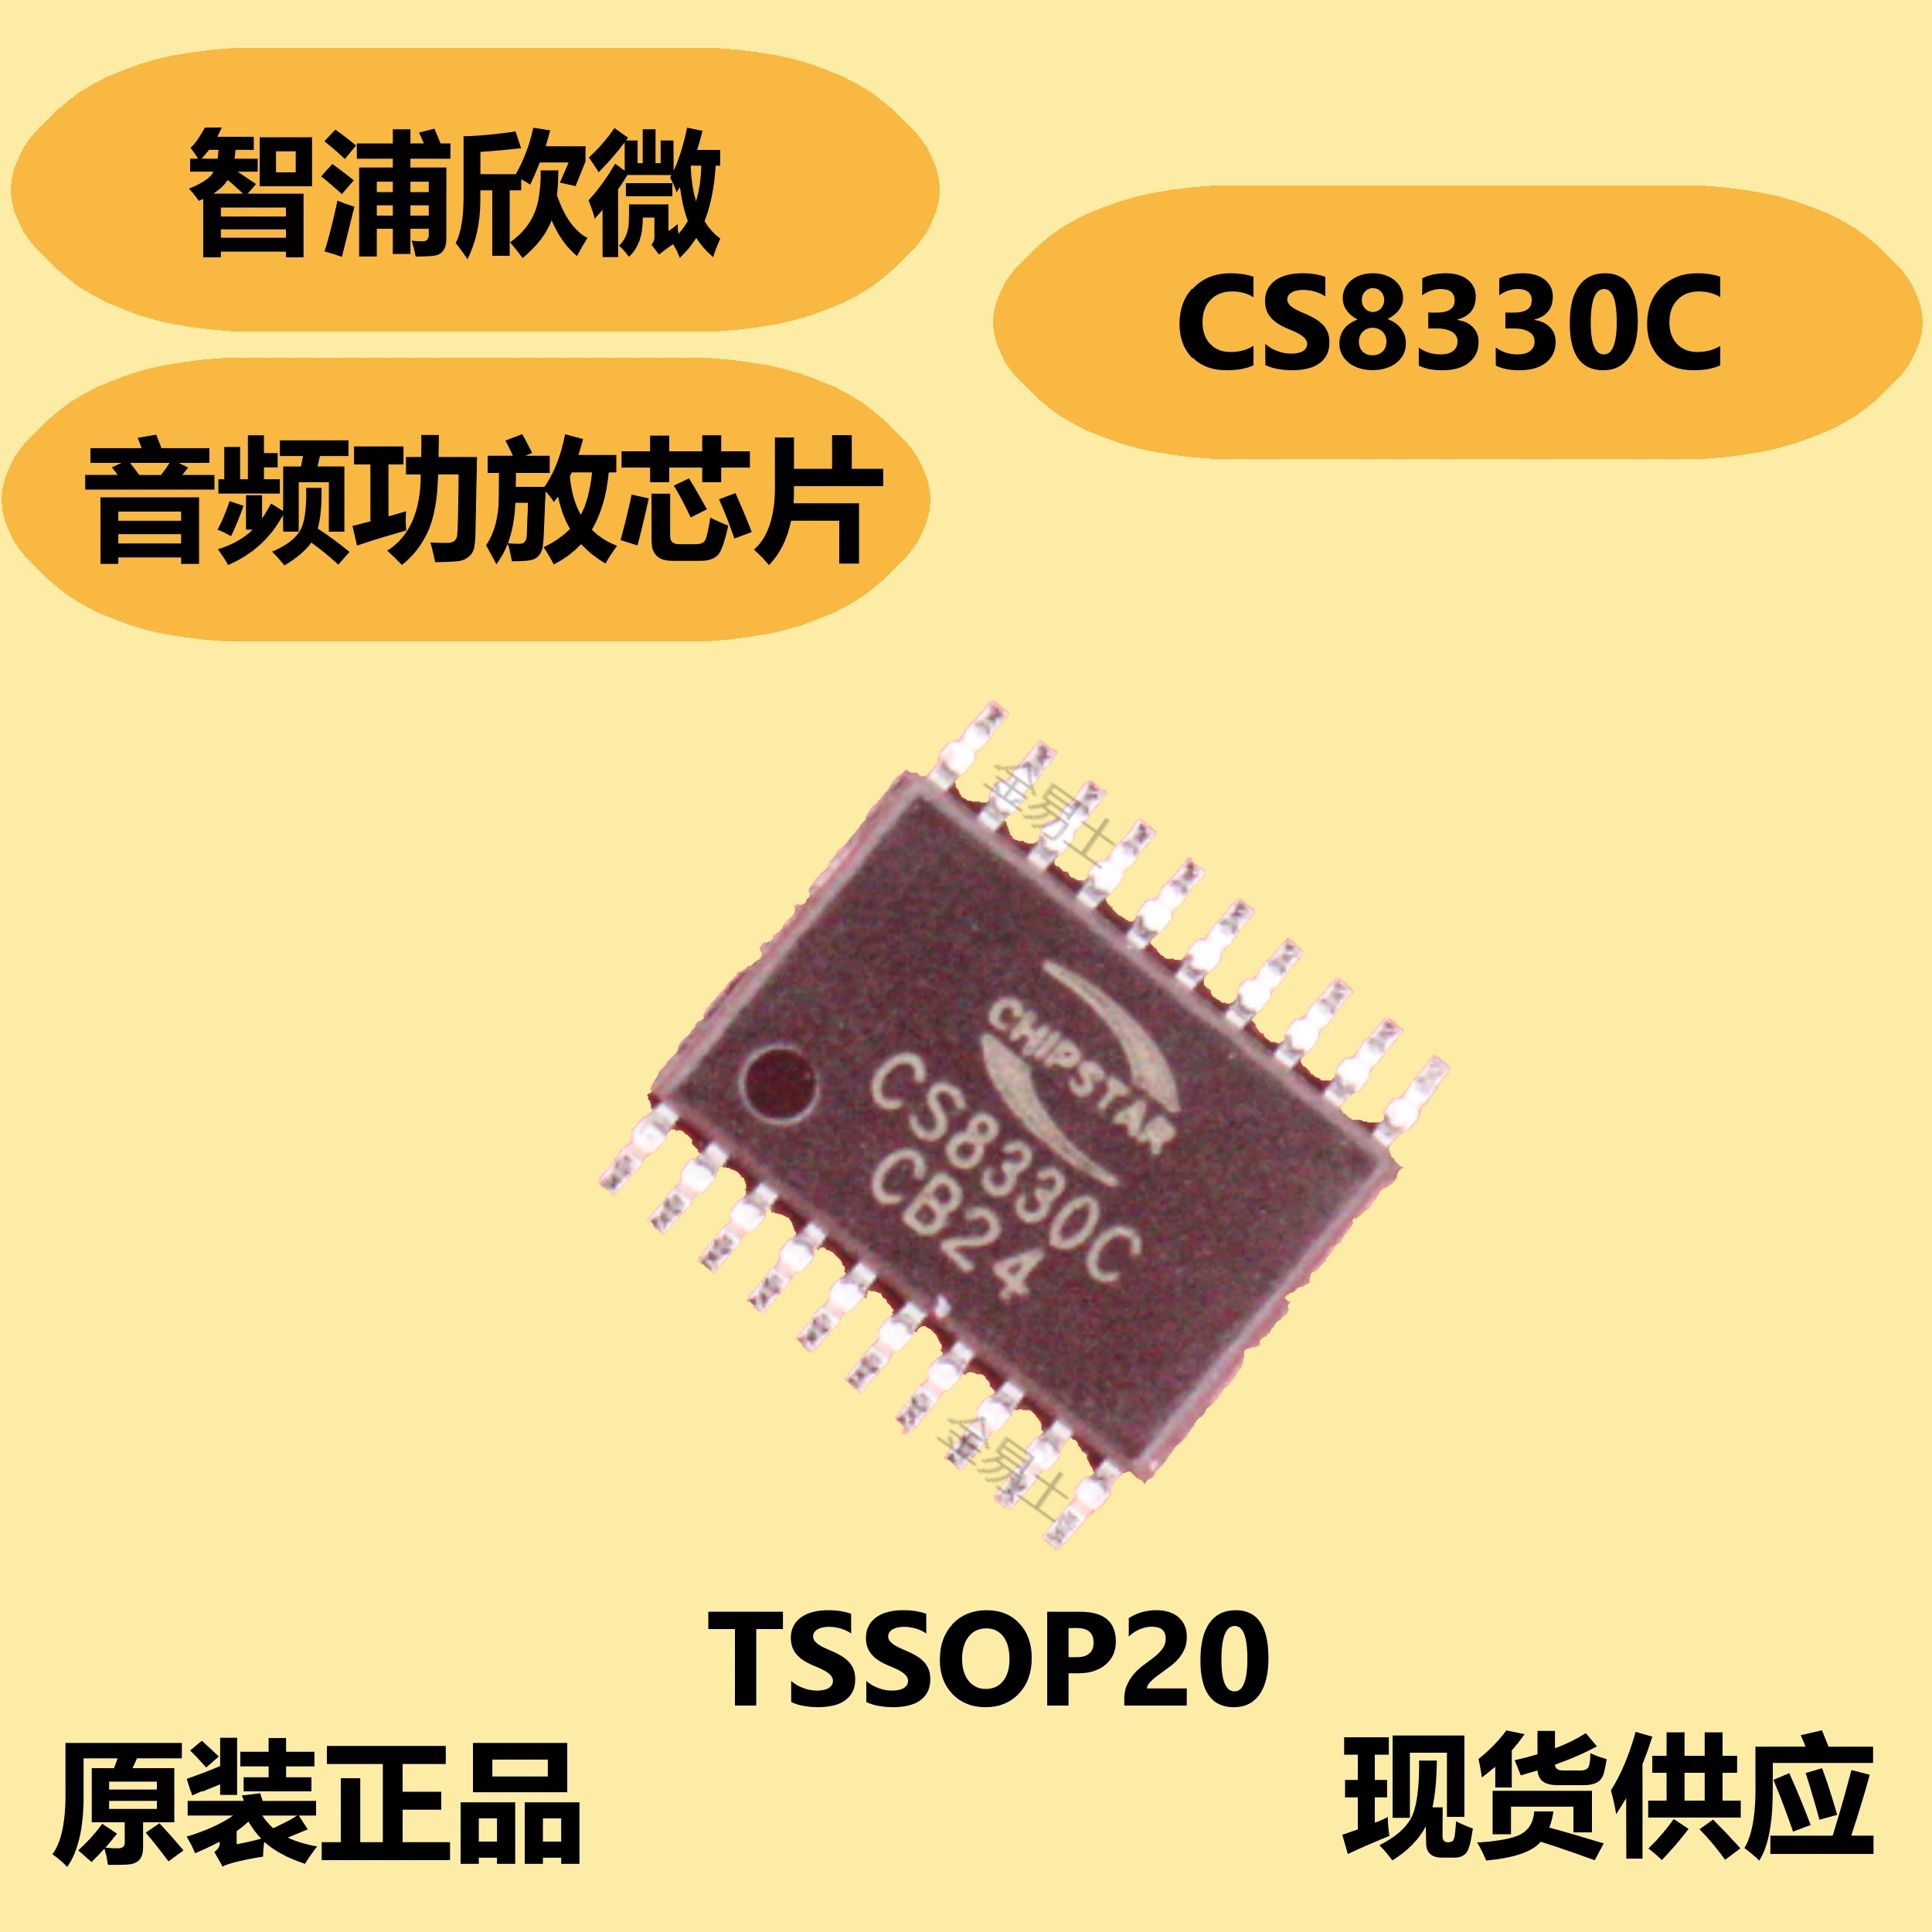 Zhipu Xinwei CS8330C chính hãng chính hãng, chip khuếch đại công suất âm thanh, chức năng tăng cường thích ứng và chế độ ngắt âm thanh chức năng của lm317 chức năng của ic